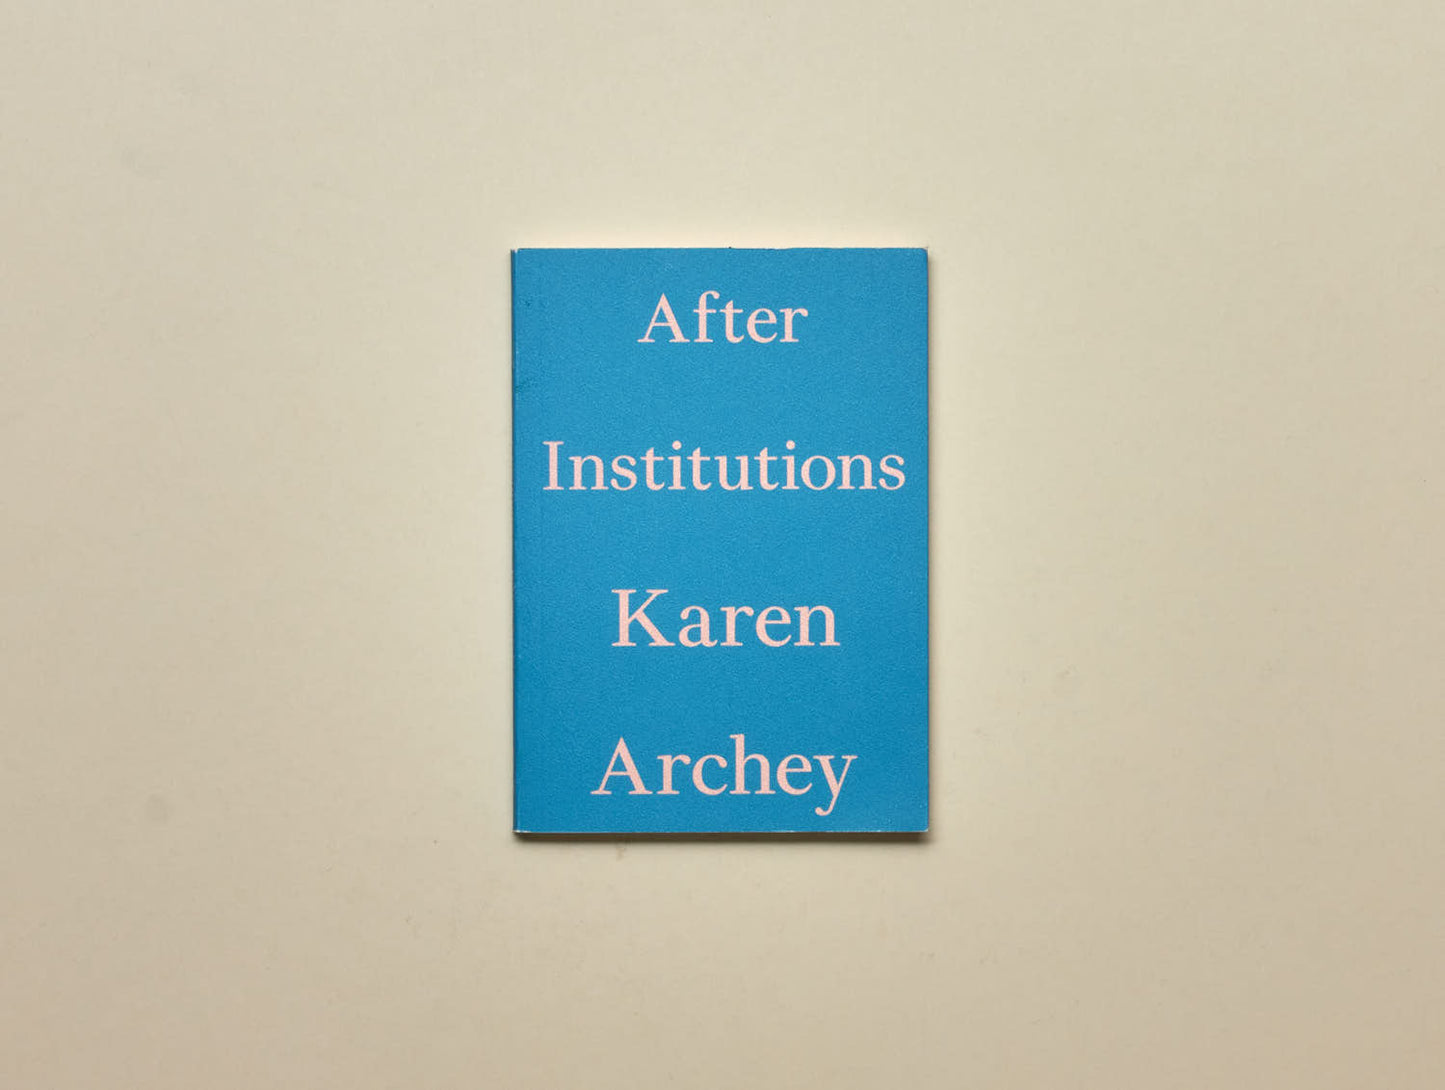 Karen Archey, After Institutions